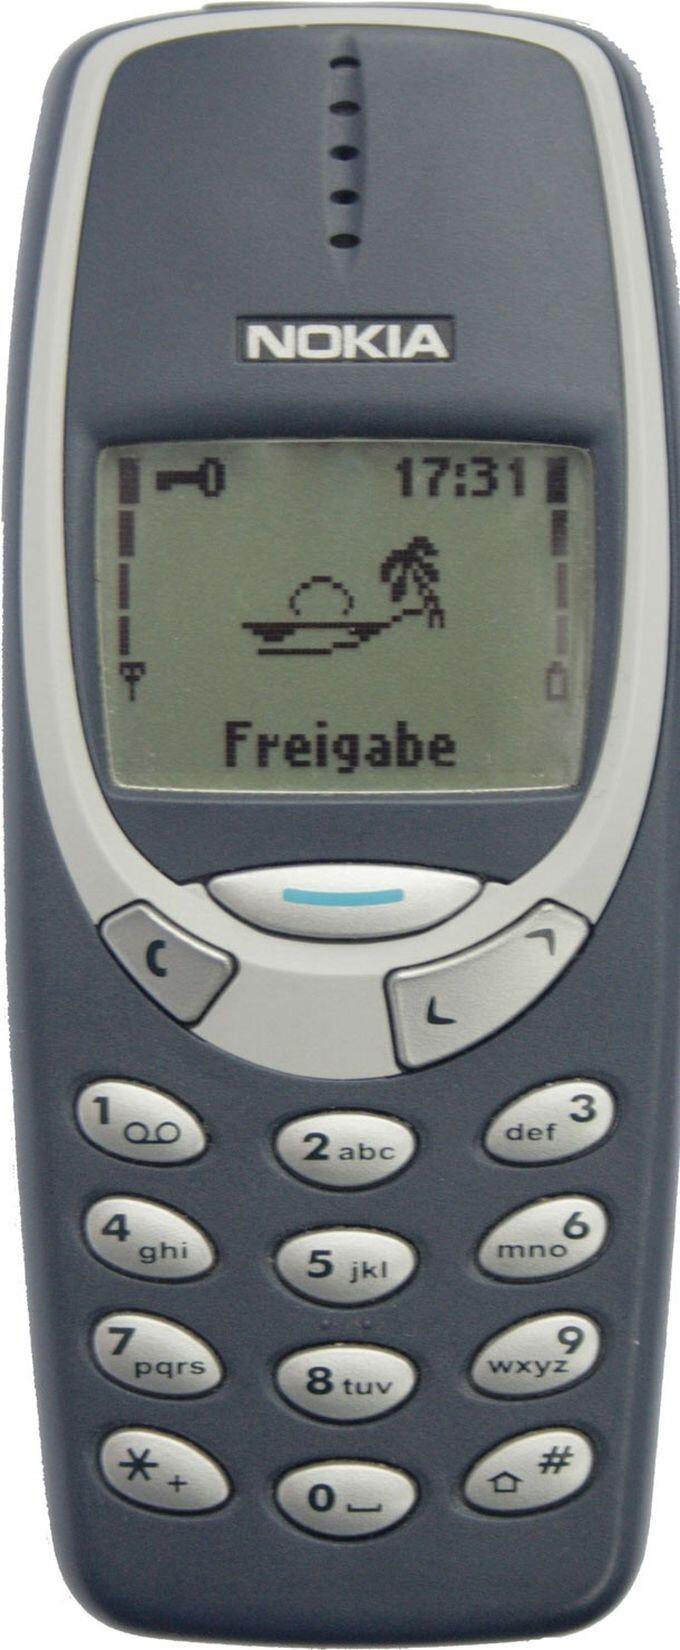 14. Nokia 3210/3310